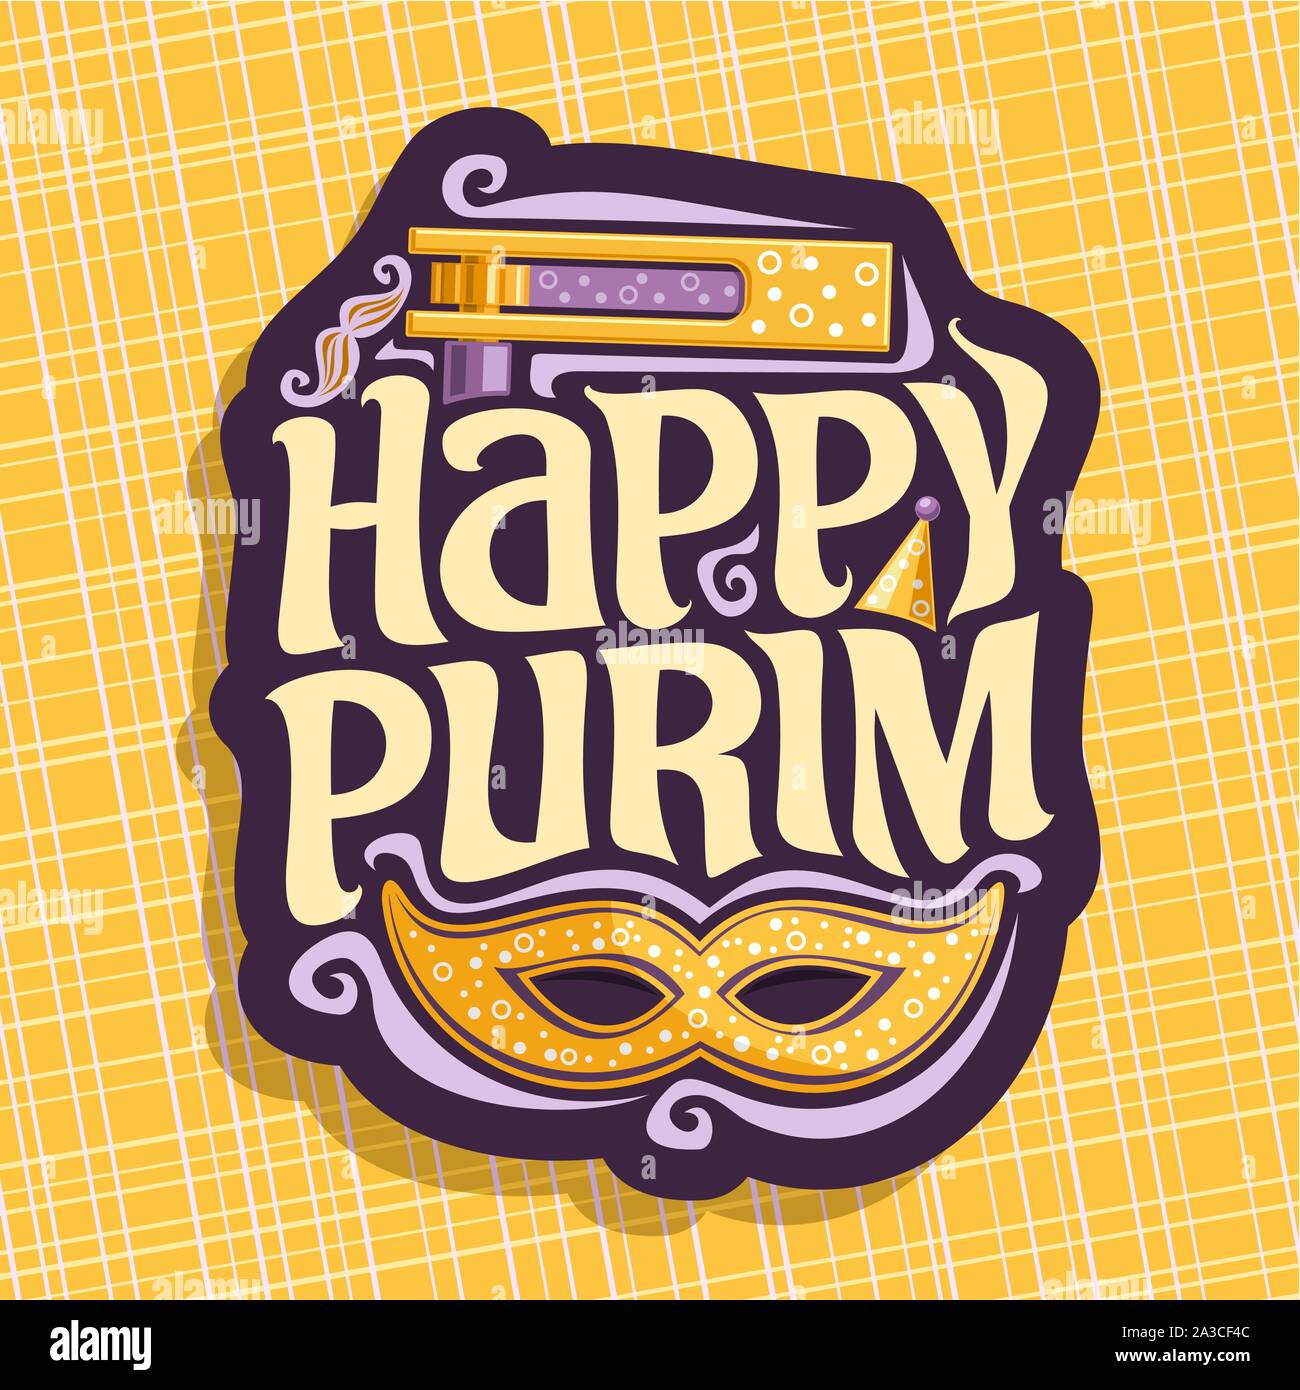 Vektor logo für Happy Purim, Poster mit Karneval Maske und Krachmacher Spielzeug für jüdische Feiertag, ursprüngliche Schriftart für die Begrüßung zitieren happy Purim, masquerad Stock Vektor